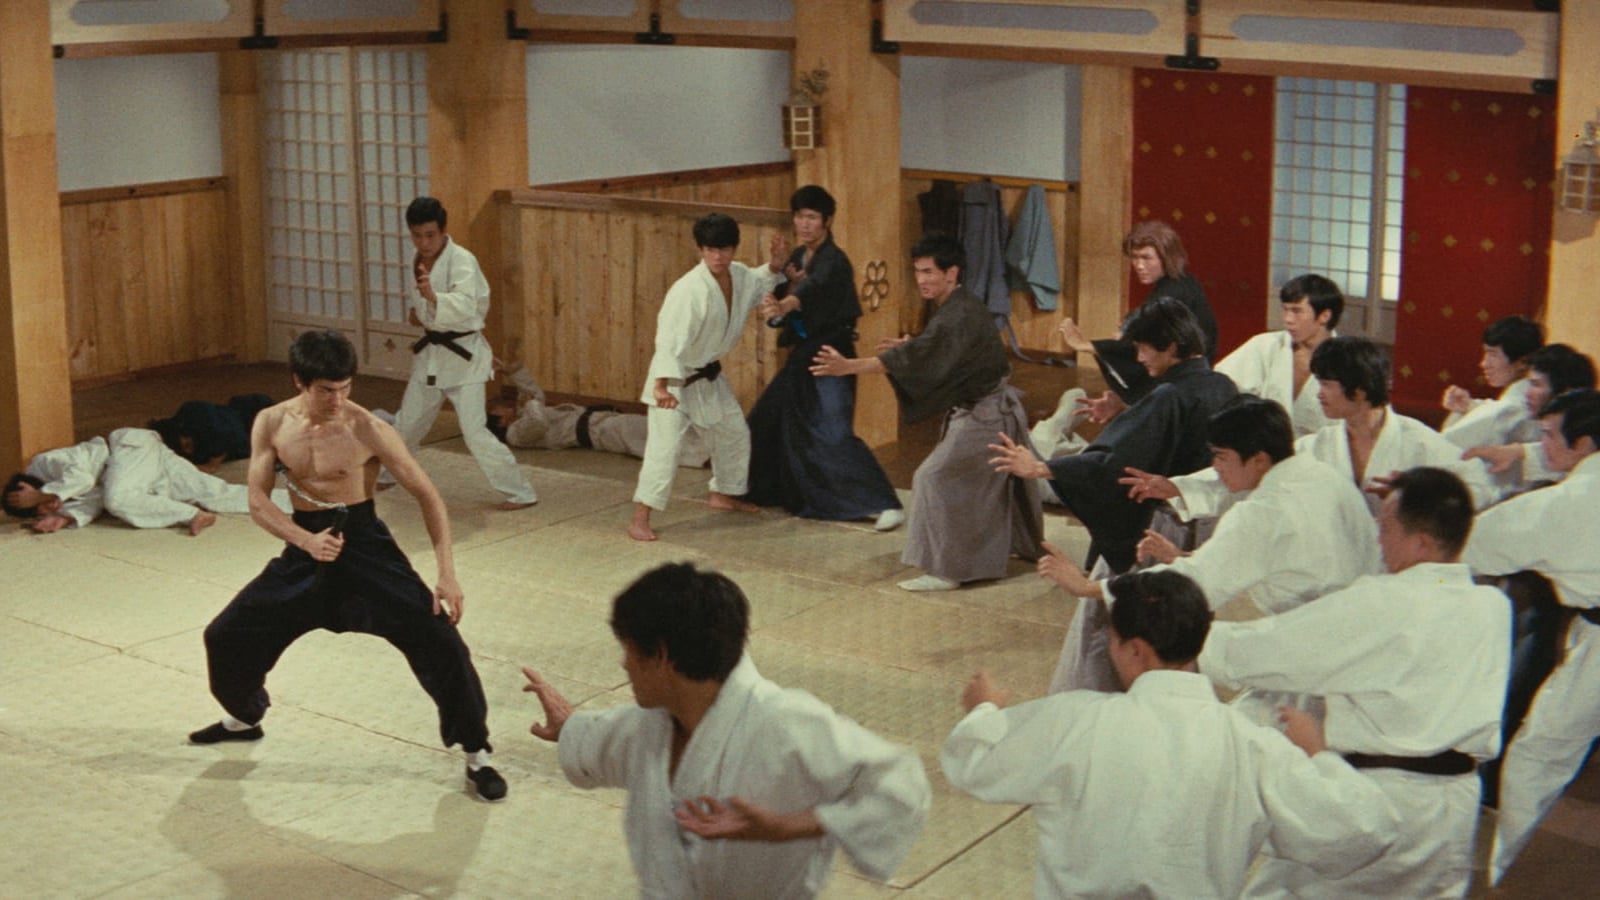 精武門 (1972)